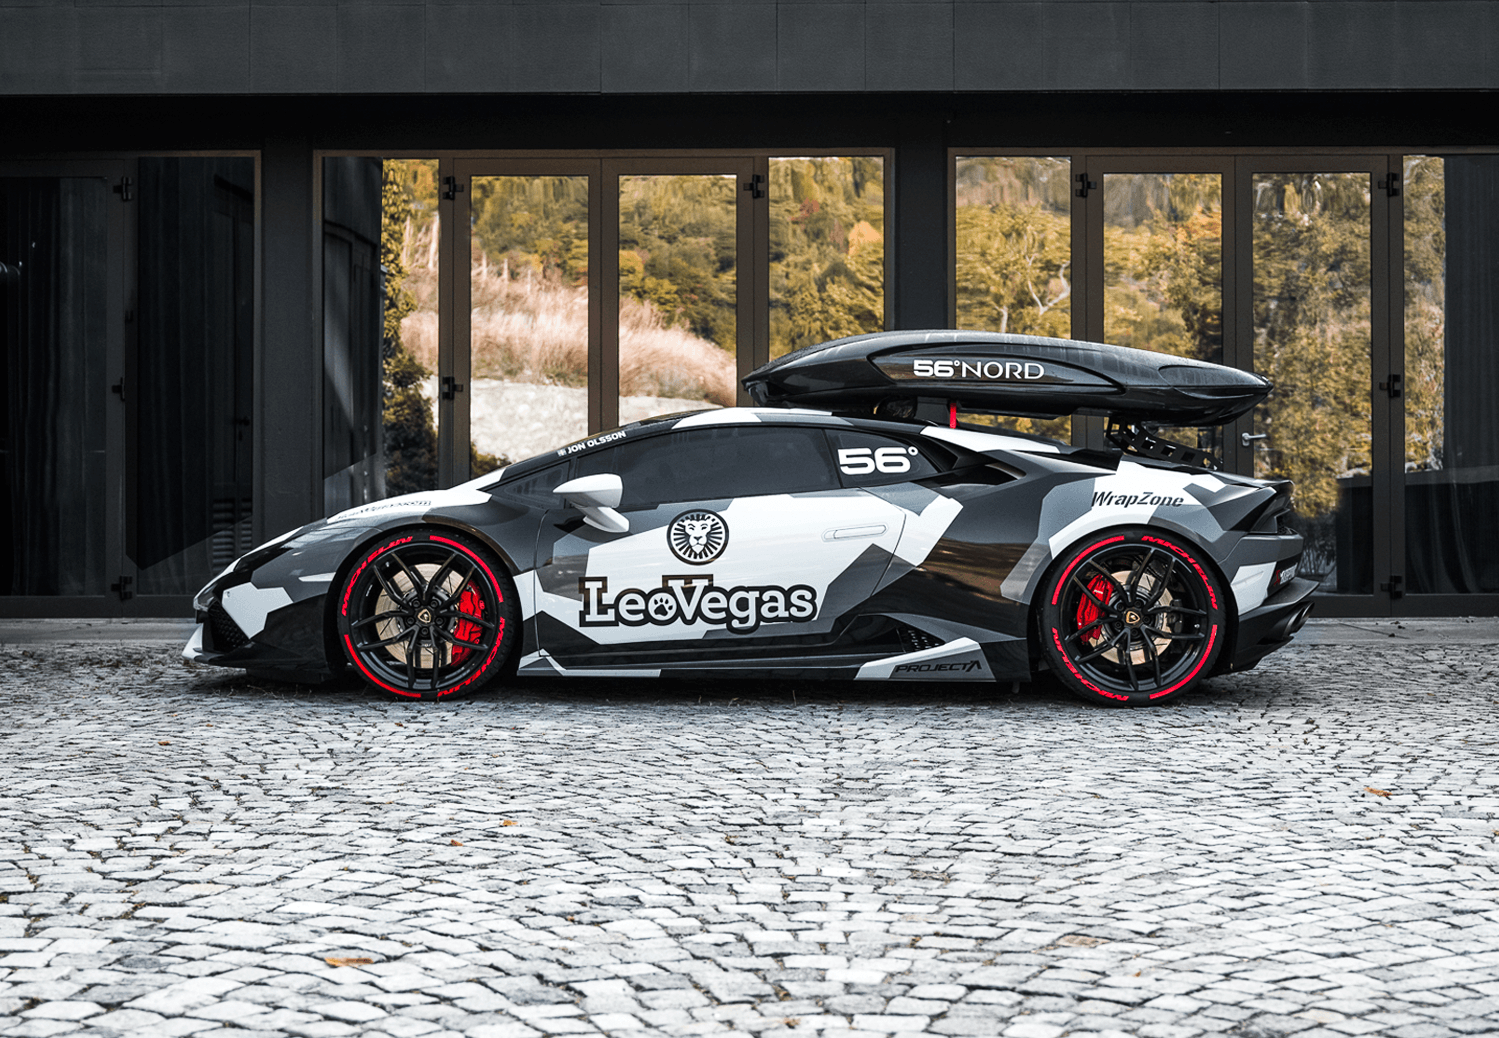 Jon Olsson’s Lamborghini Huracán